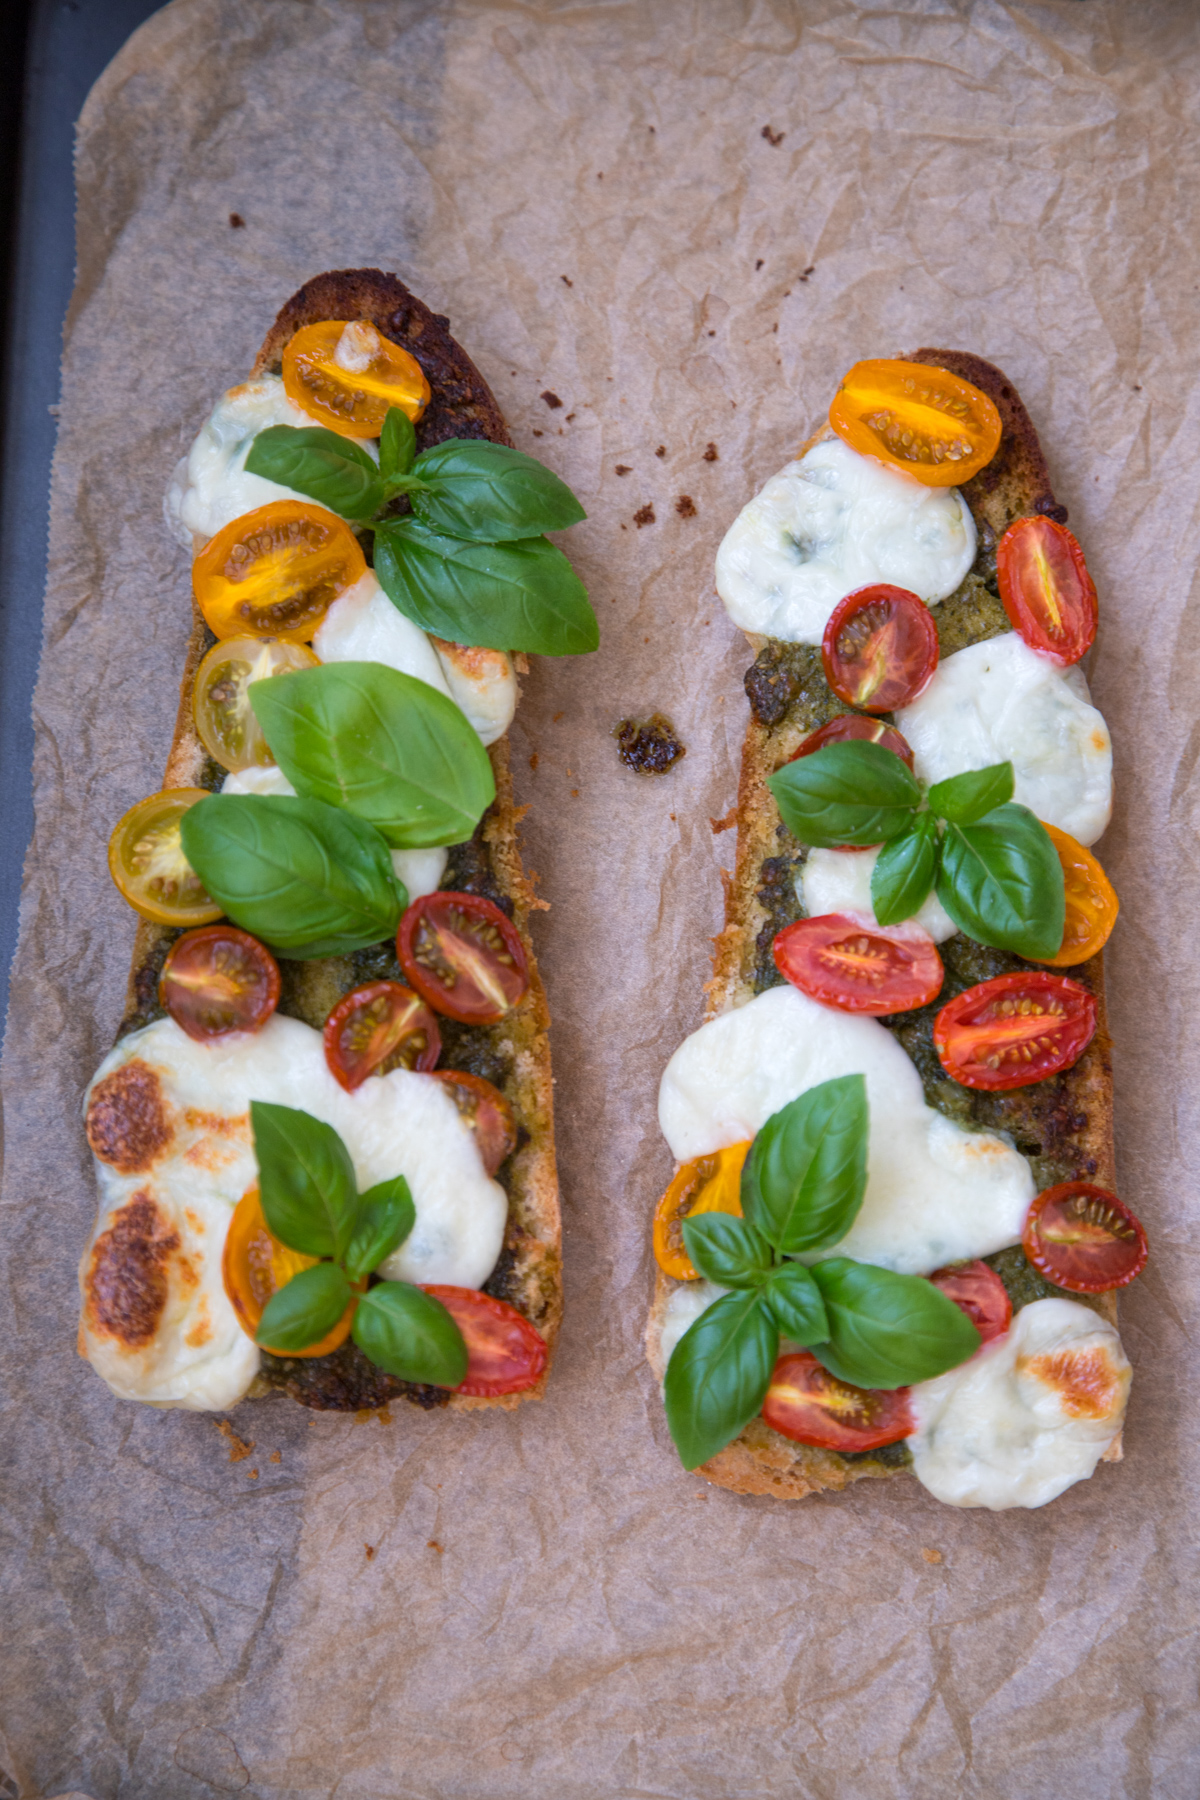 Schnelles Tomate-Mozzarella Baguette aus dem Ofen gefällig? Das ist total fix zubereitet und bei uns allen sehr beliebt! Alle Zutaten haben wir immer zuhause!